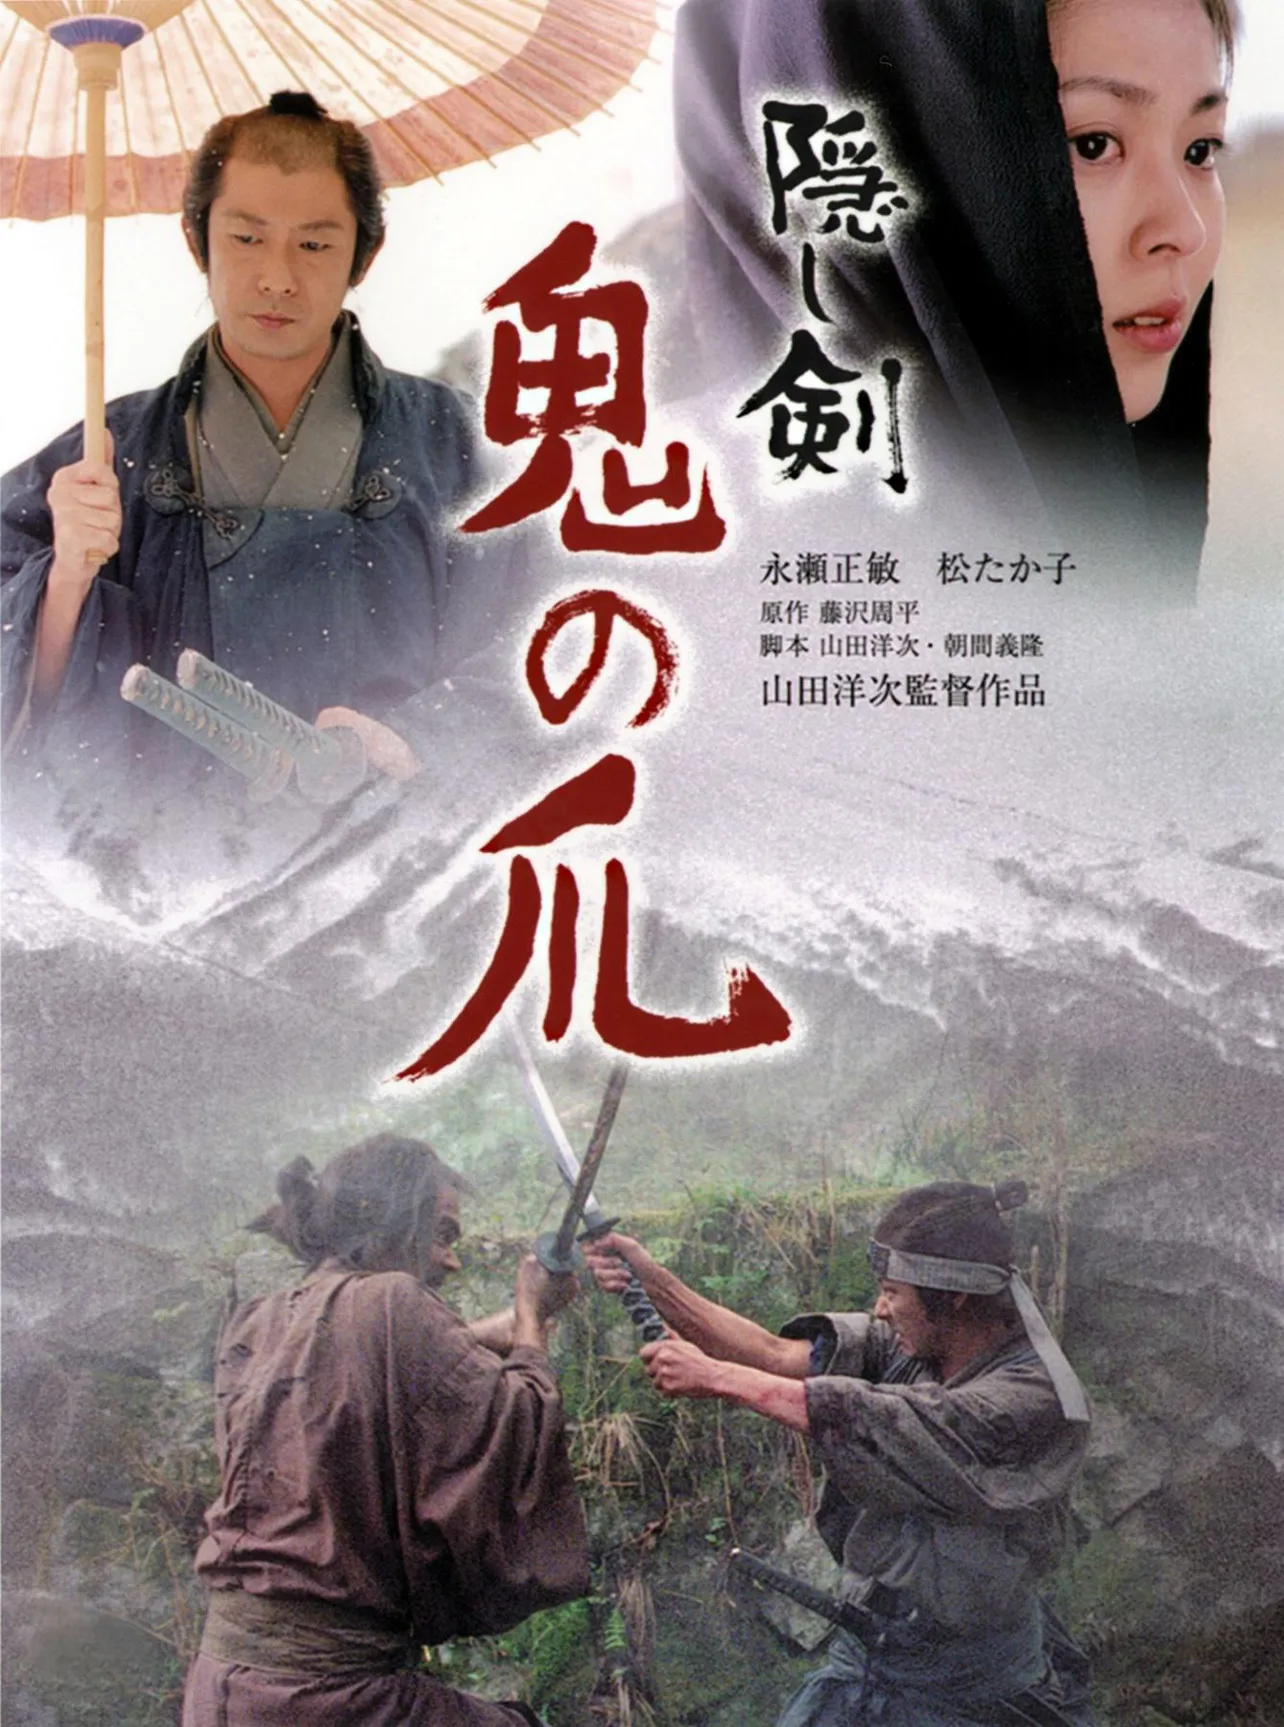 「たそがれ清兵衛」に続き、藤沢周平の原作を山田洋次監督が映画化した「隠し剣鬼の爪」